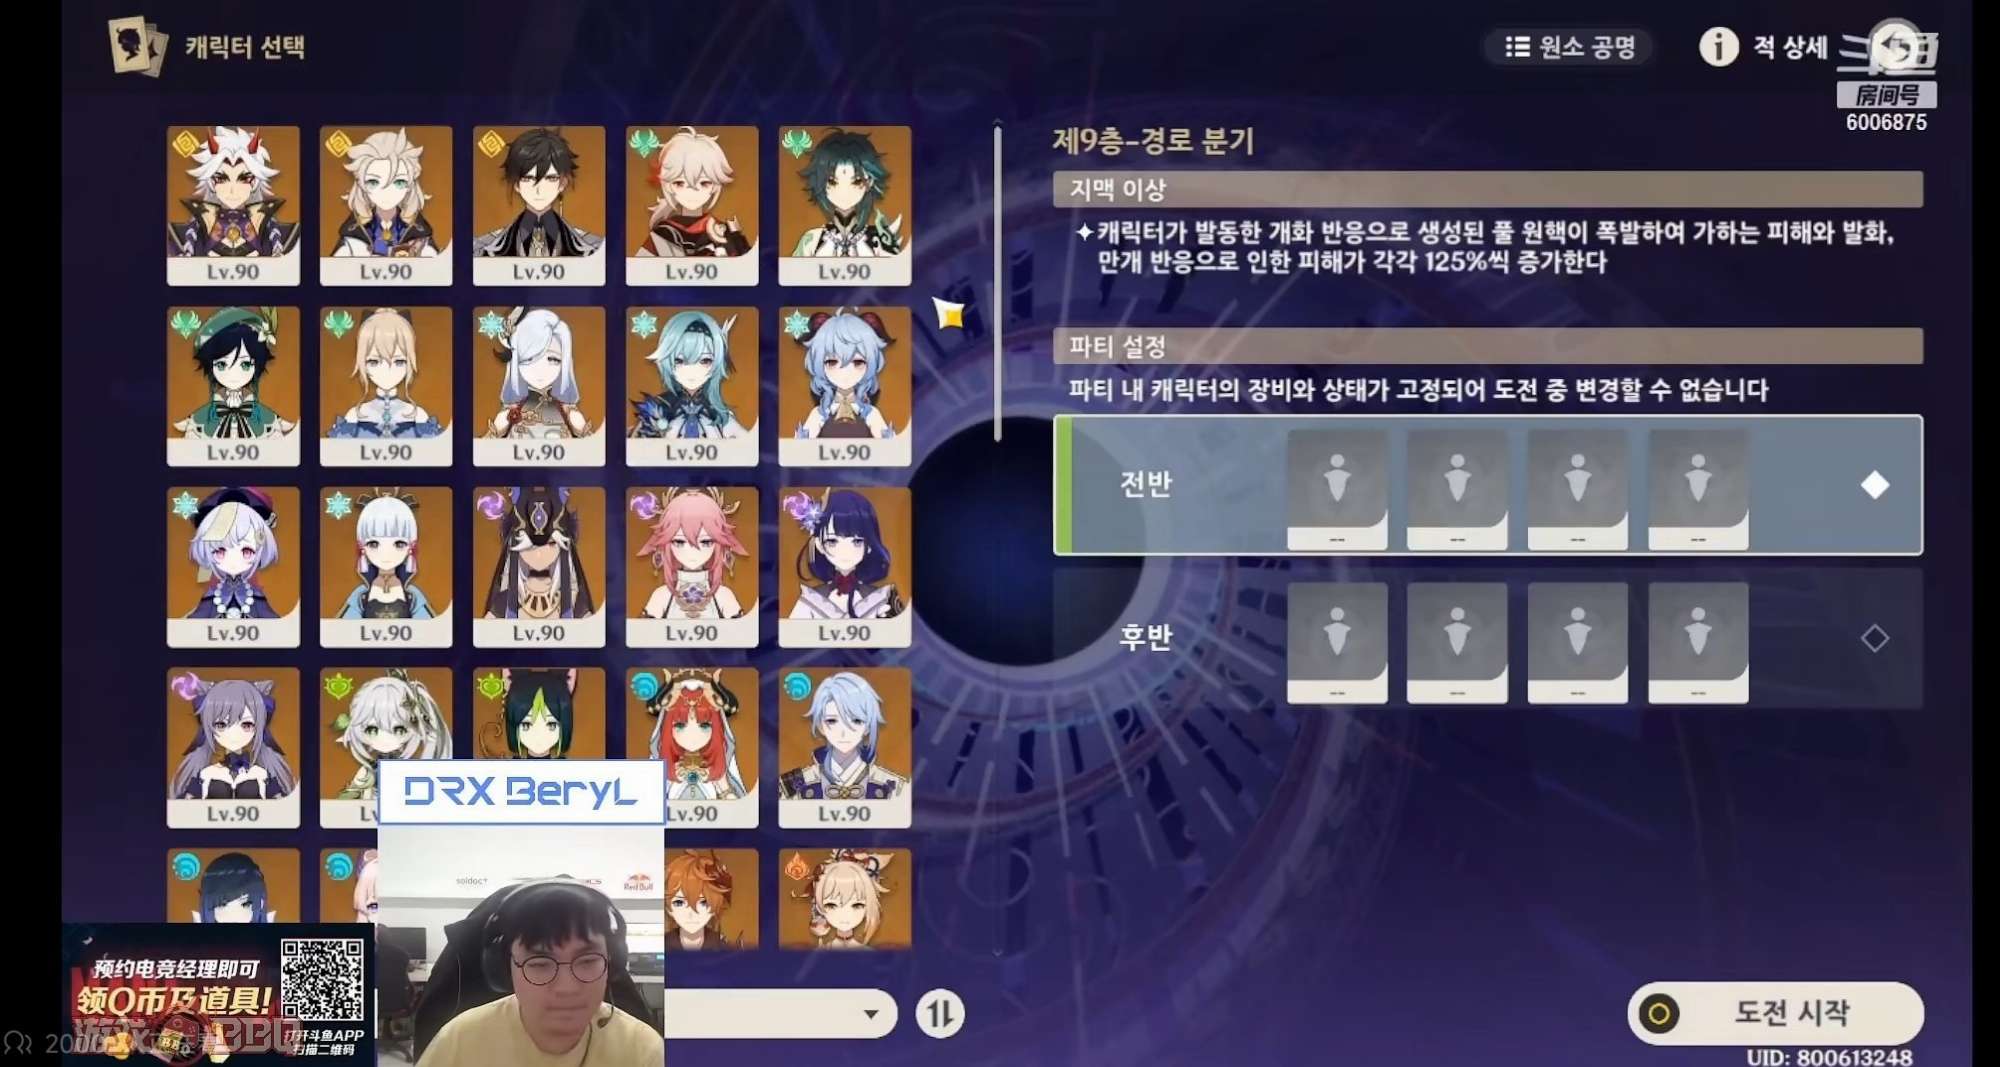 Đến cả tài khoản chính chủ của Genshin Impact cũng vào xem livestream và donate cho BeryL.